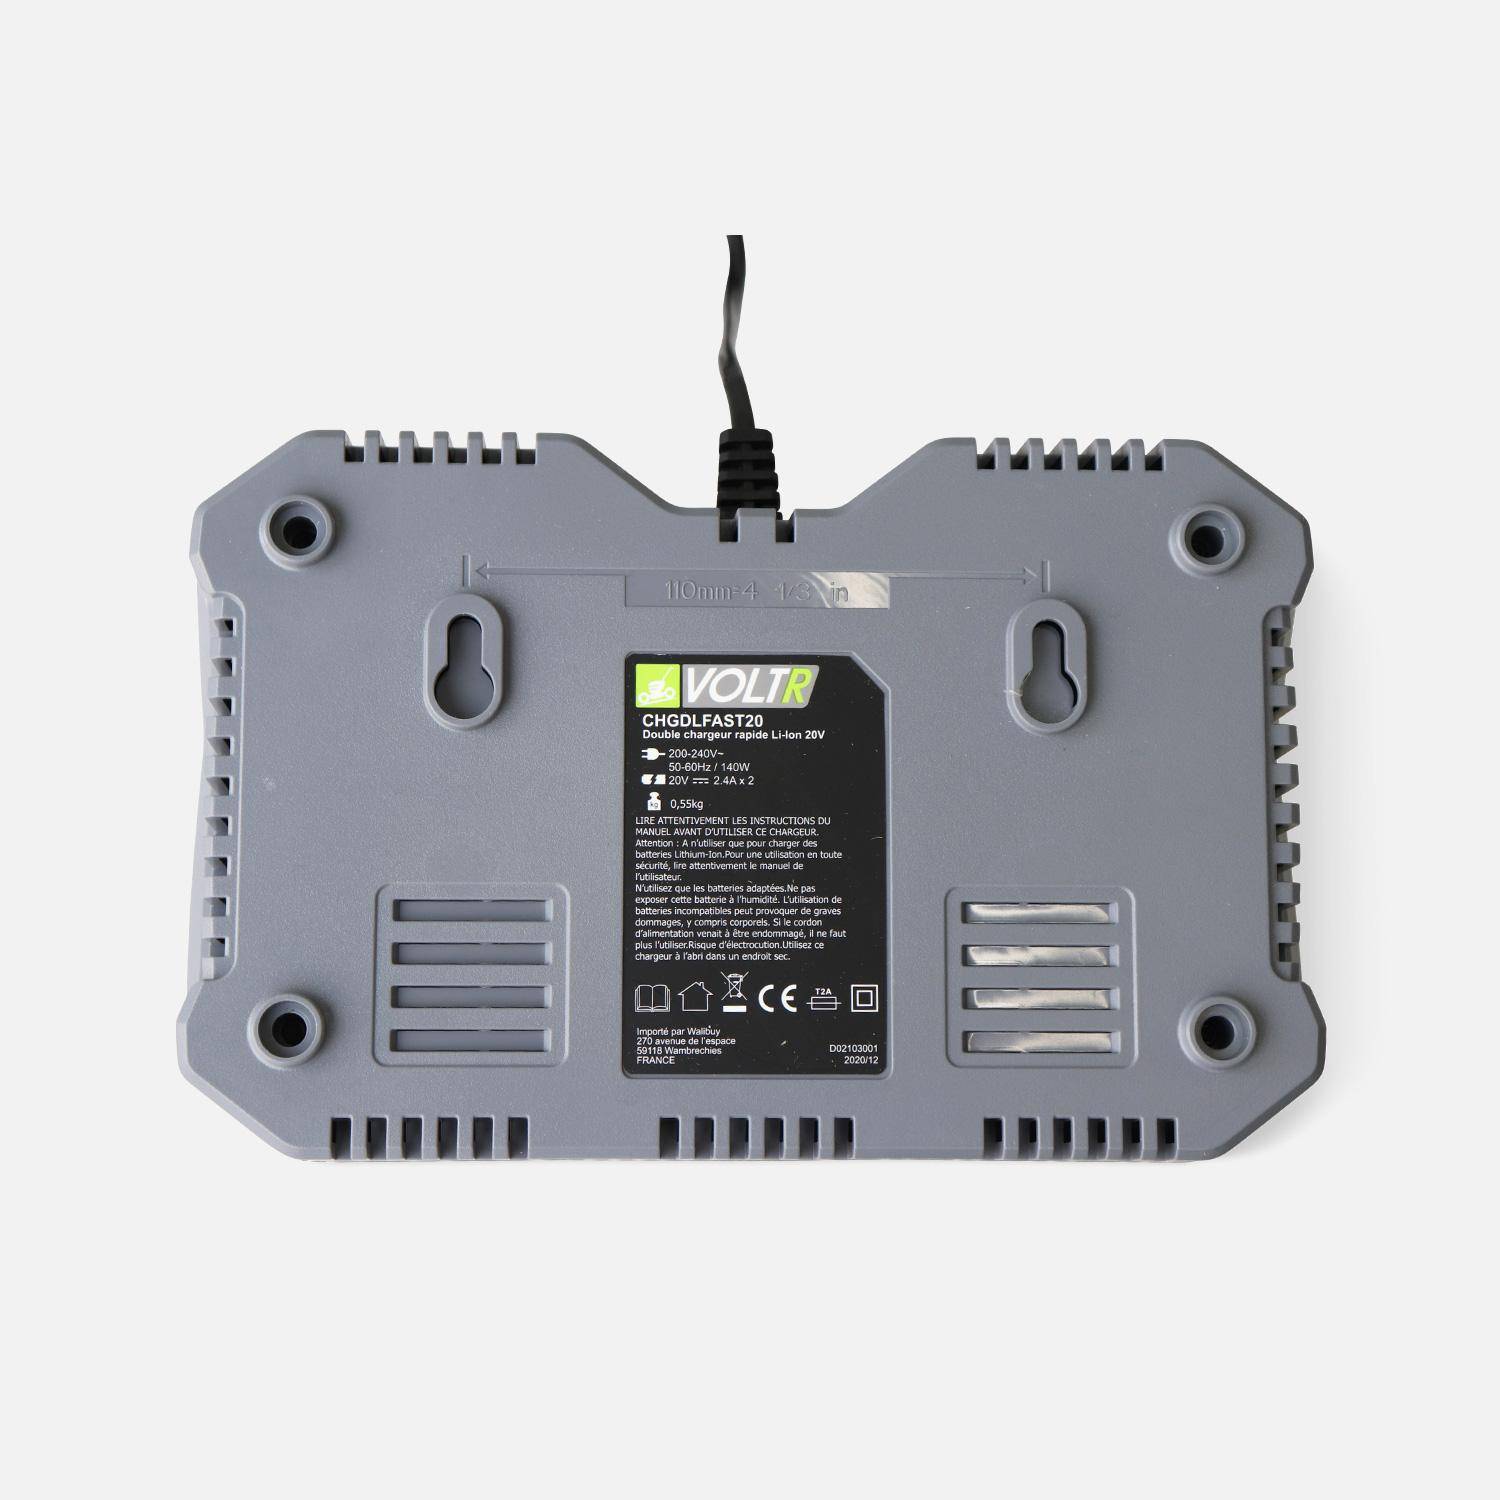 VOLTR 20V – Doble cargador rápido – Cargador para batería 20V herramienta inalámbrico VOLTR, doble cargador con indicador luminoso Photo2